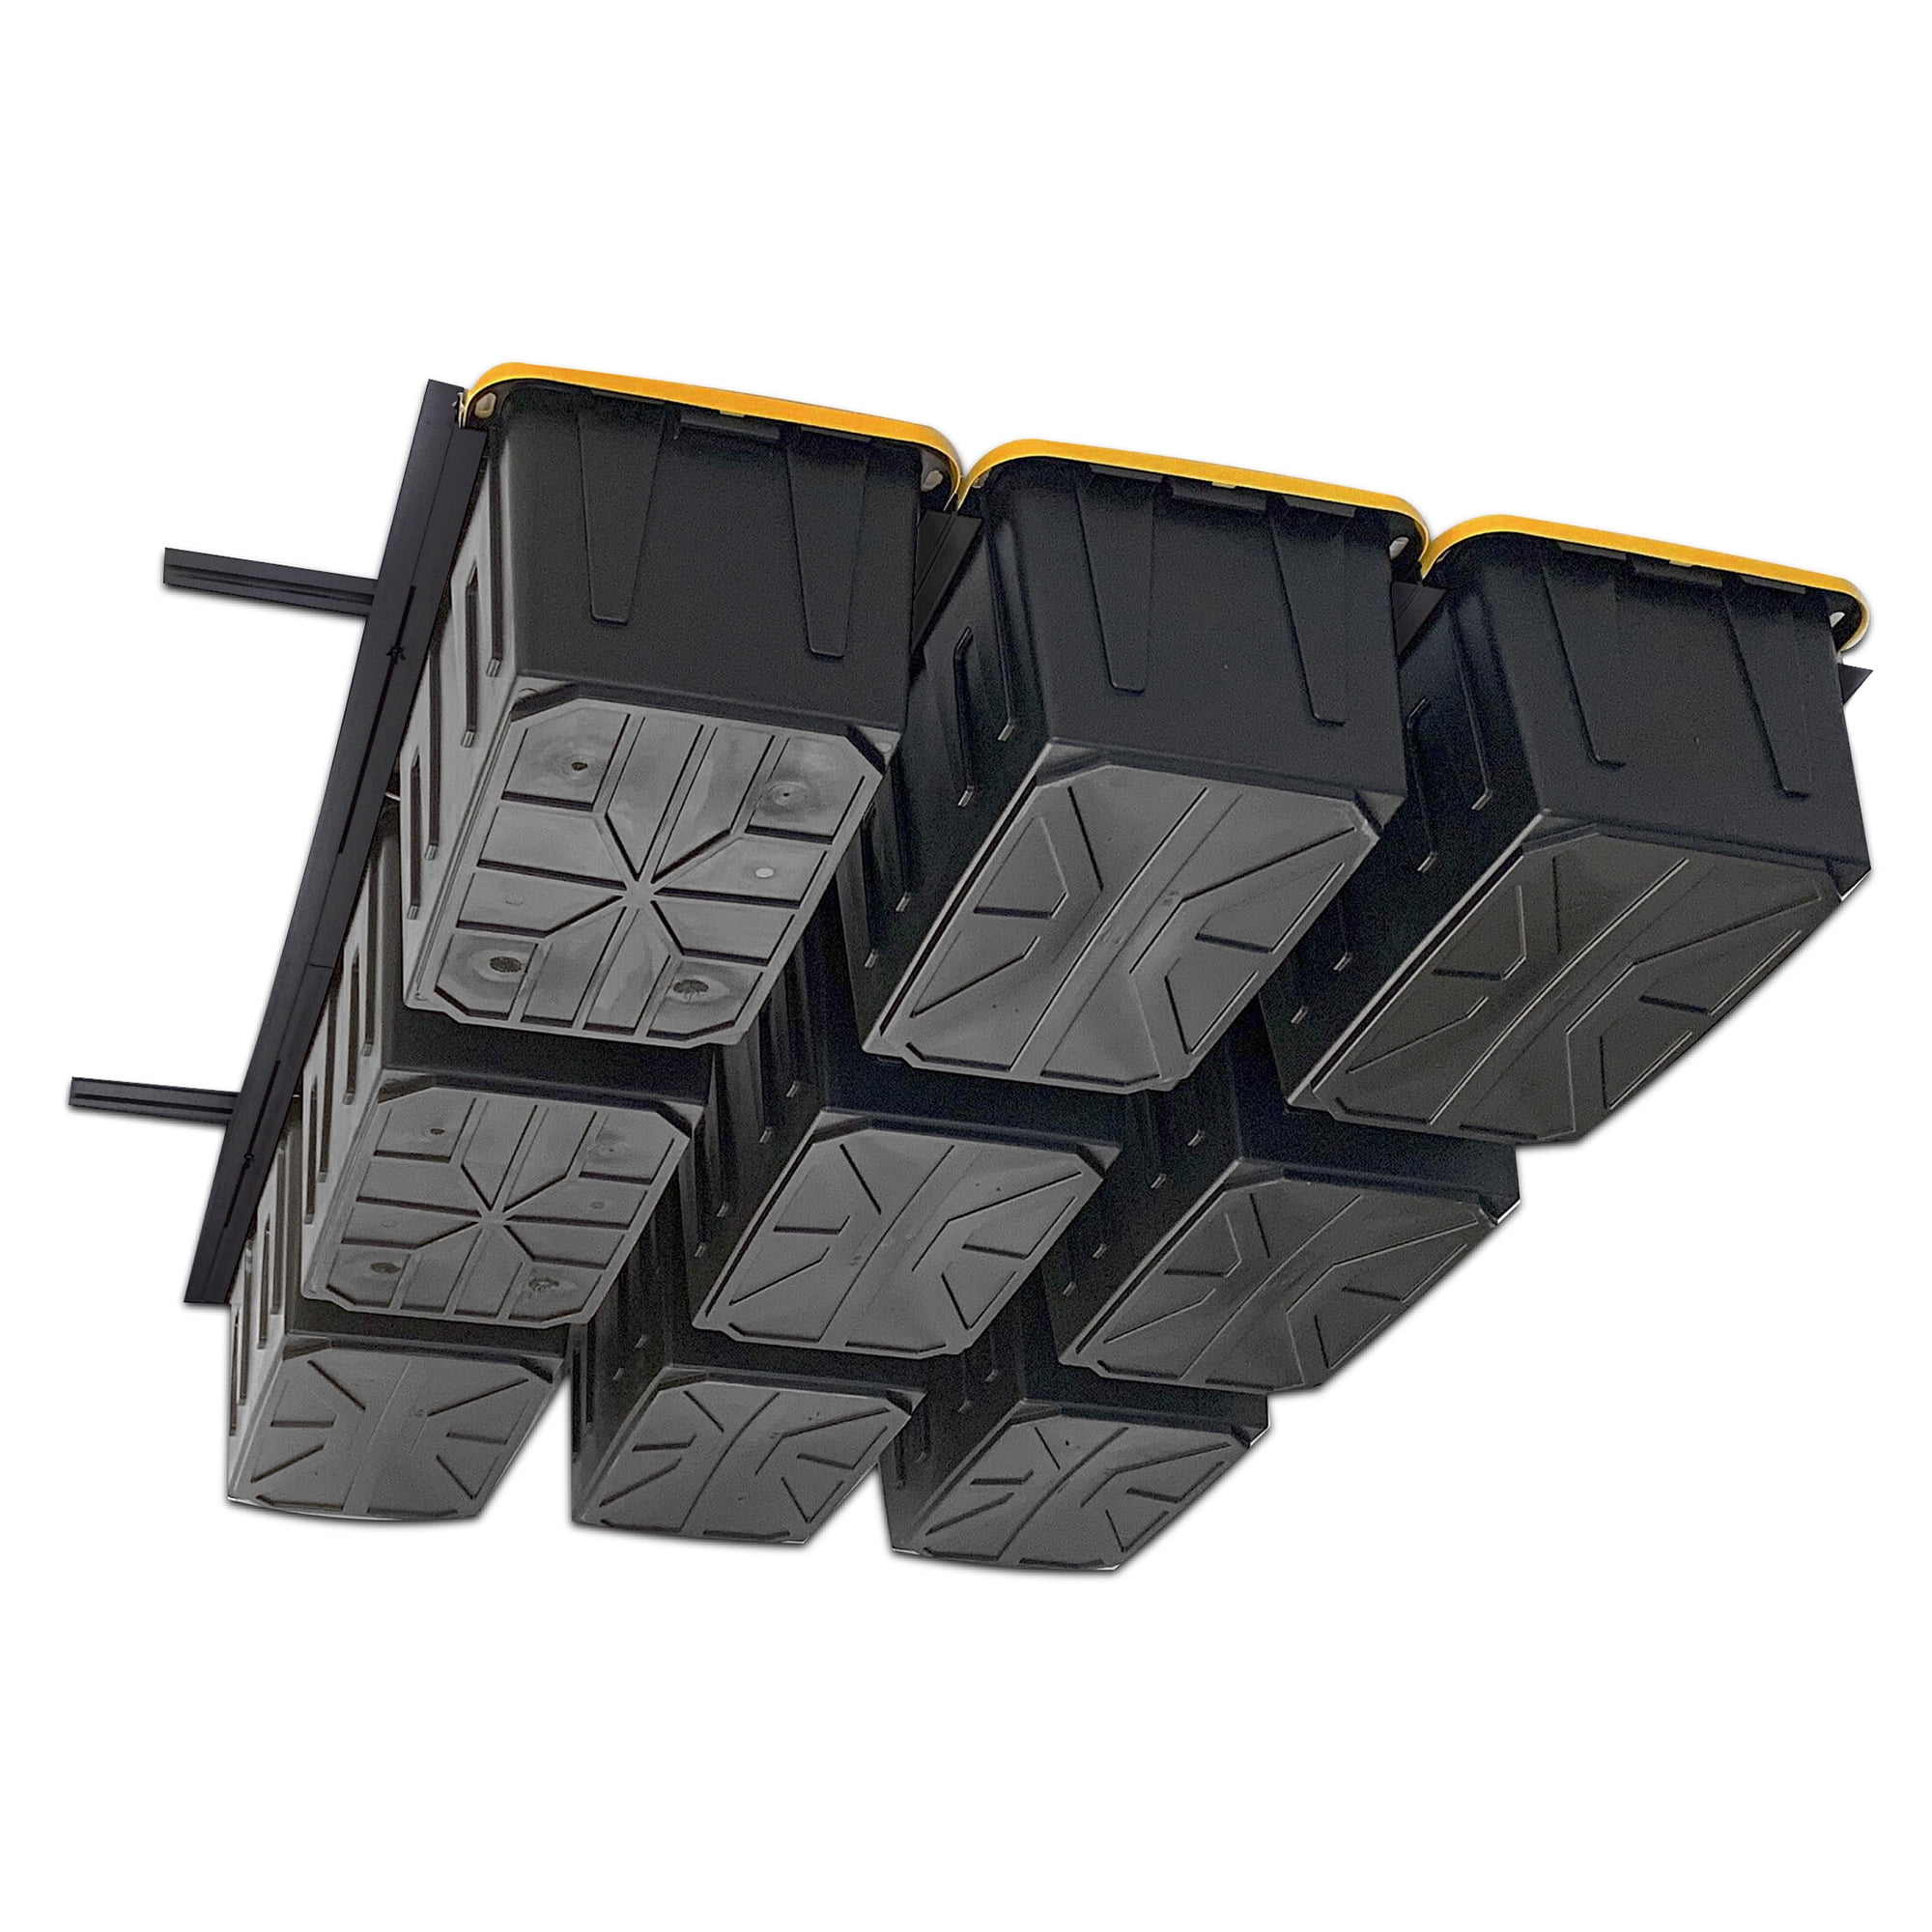 EZ Slide Tote Storage System - Overhead Garage Storage – Garage